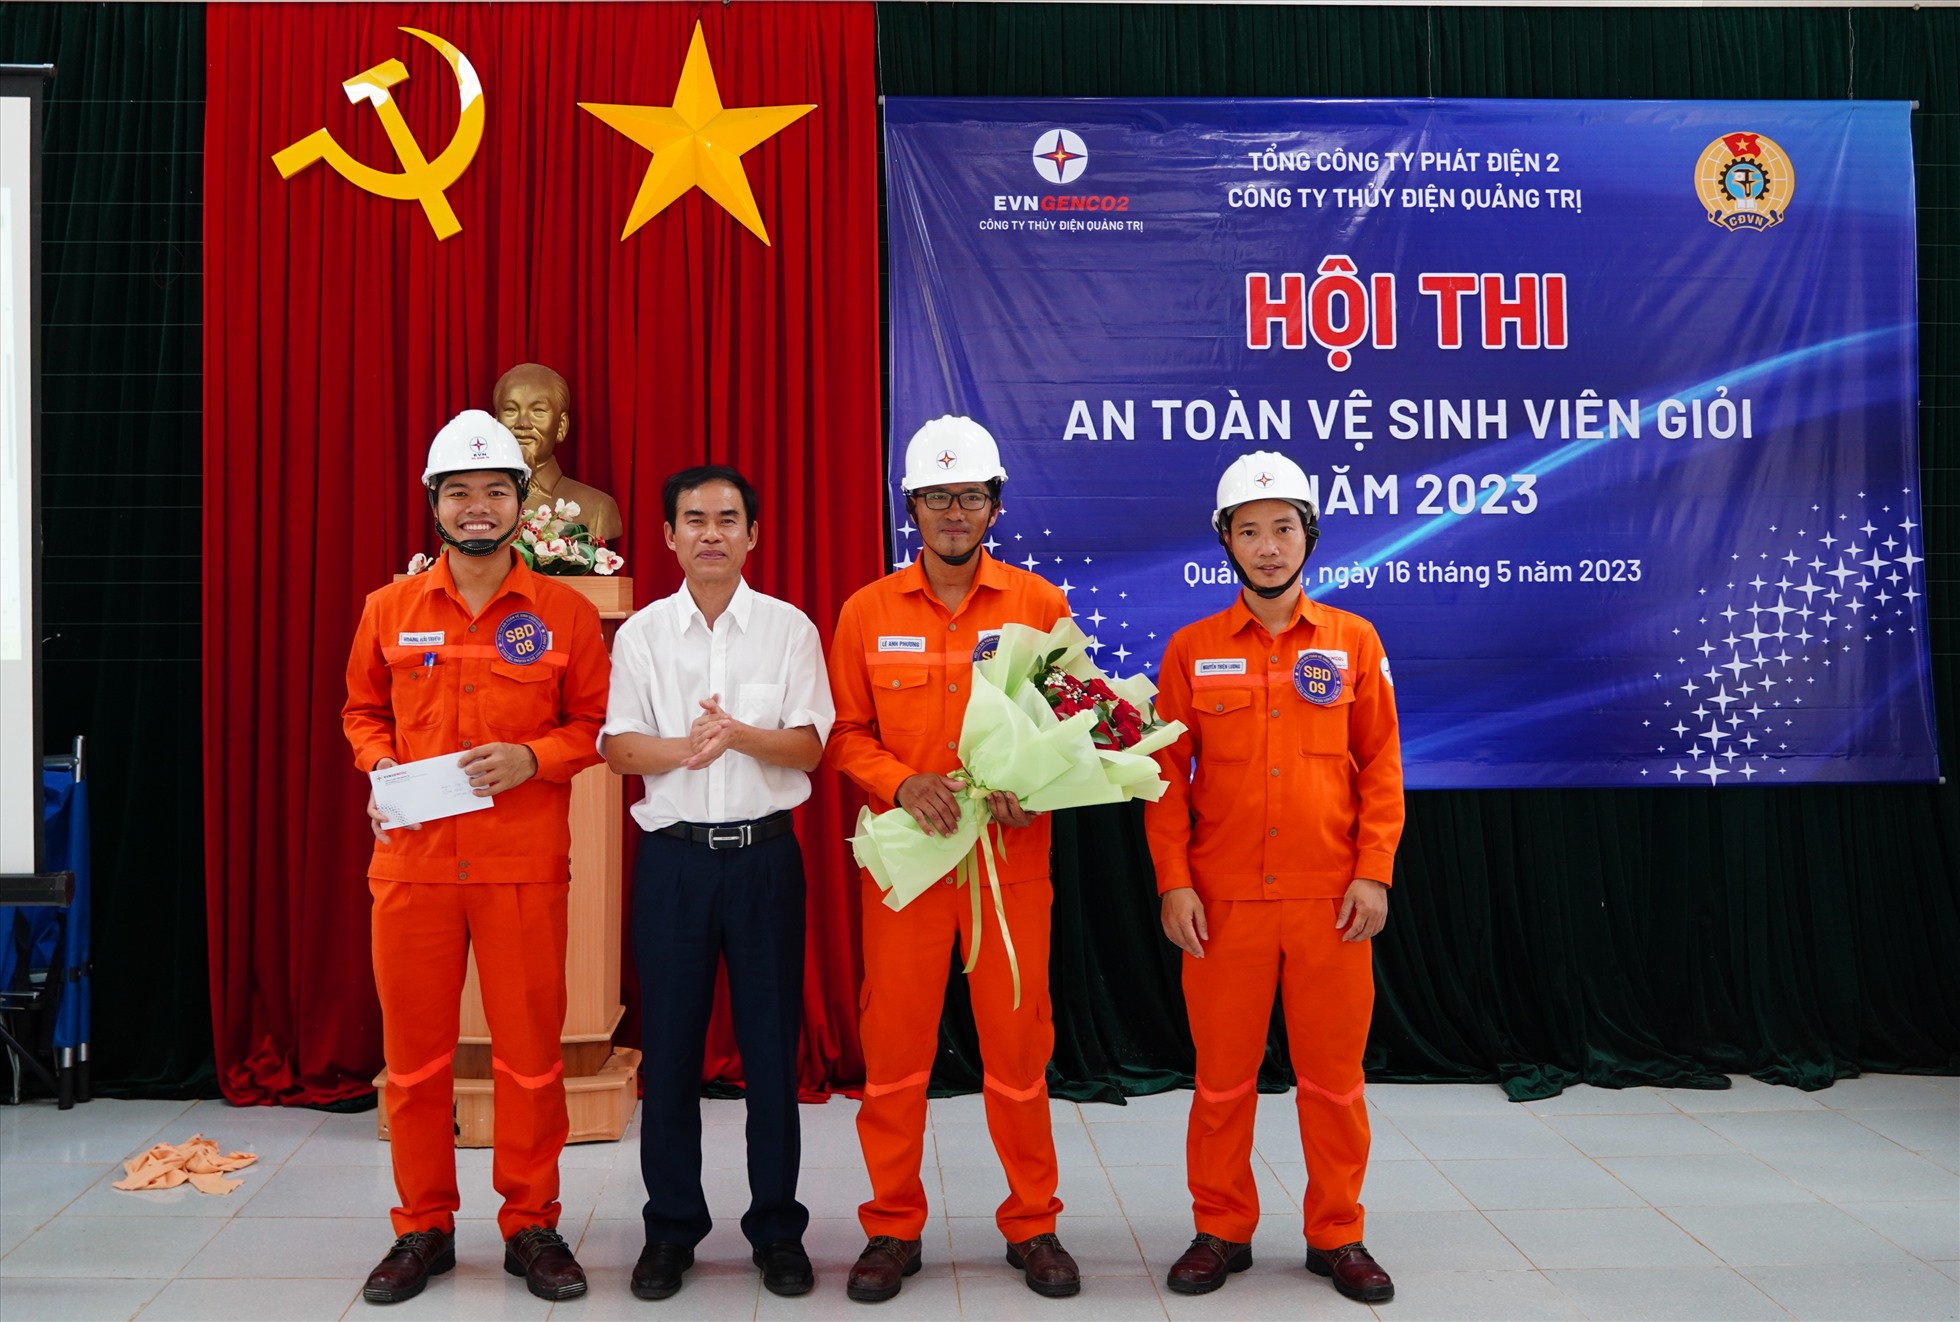 Ông Nguyễn Thanh Hùng, Giám đốc Công ty Thủy điện Quảng Trị trao giải nhất cho đội có thành tích cao. Ảnh: Trang Sinh.